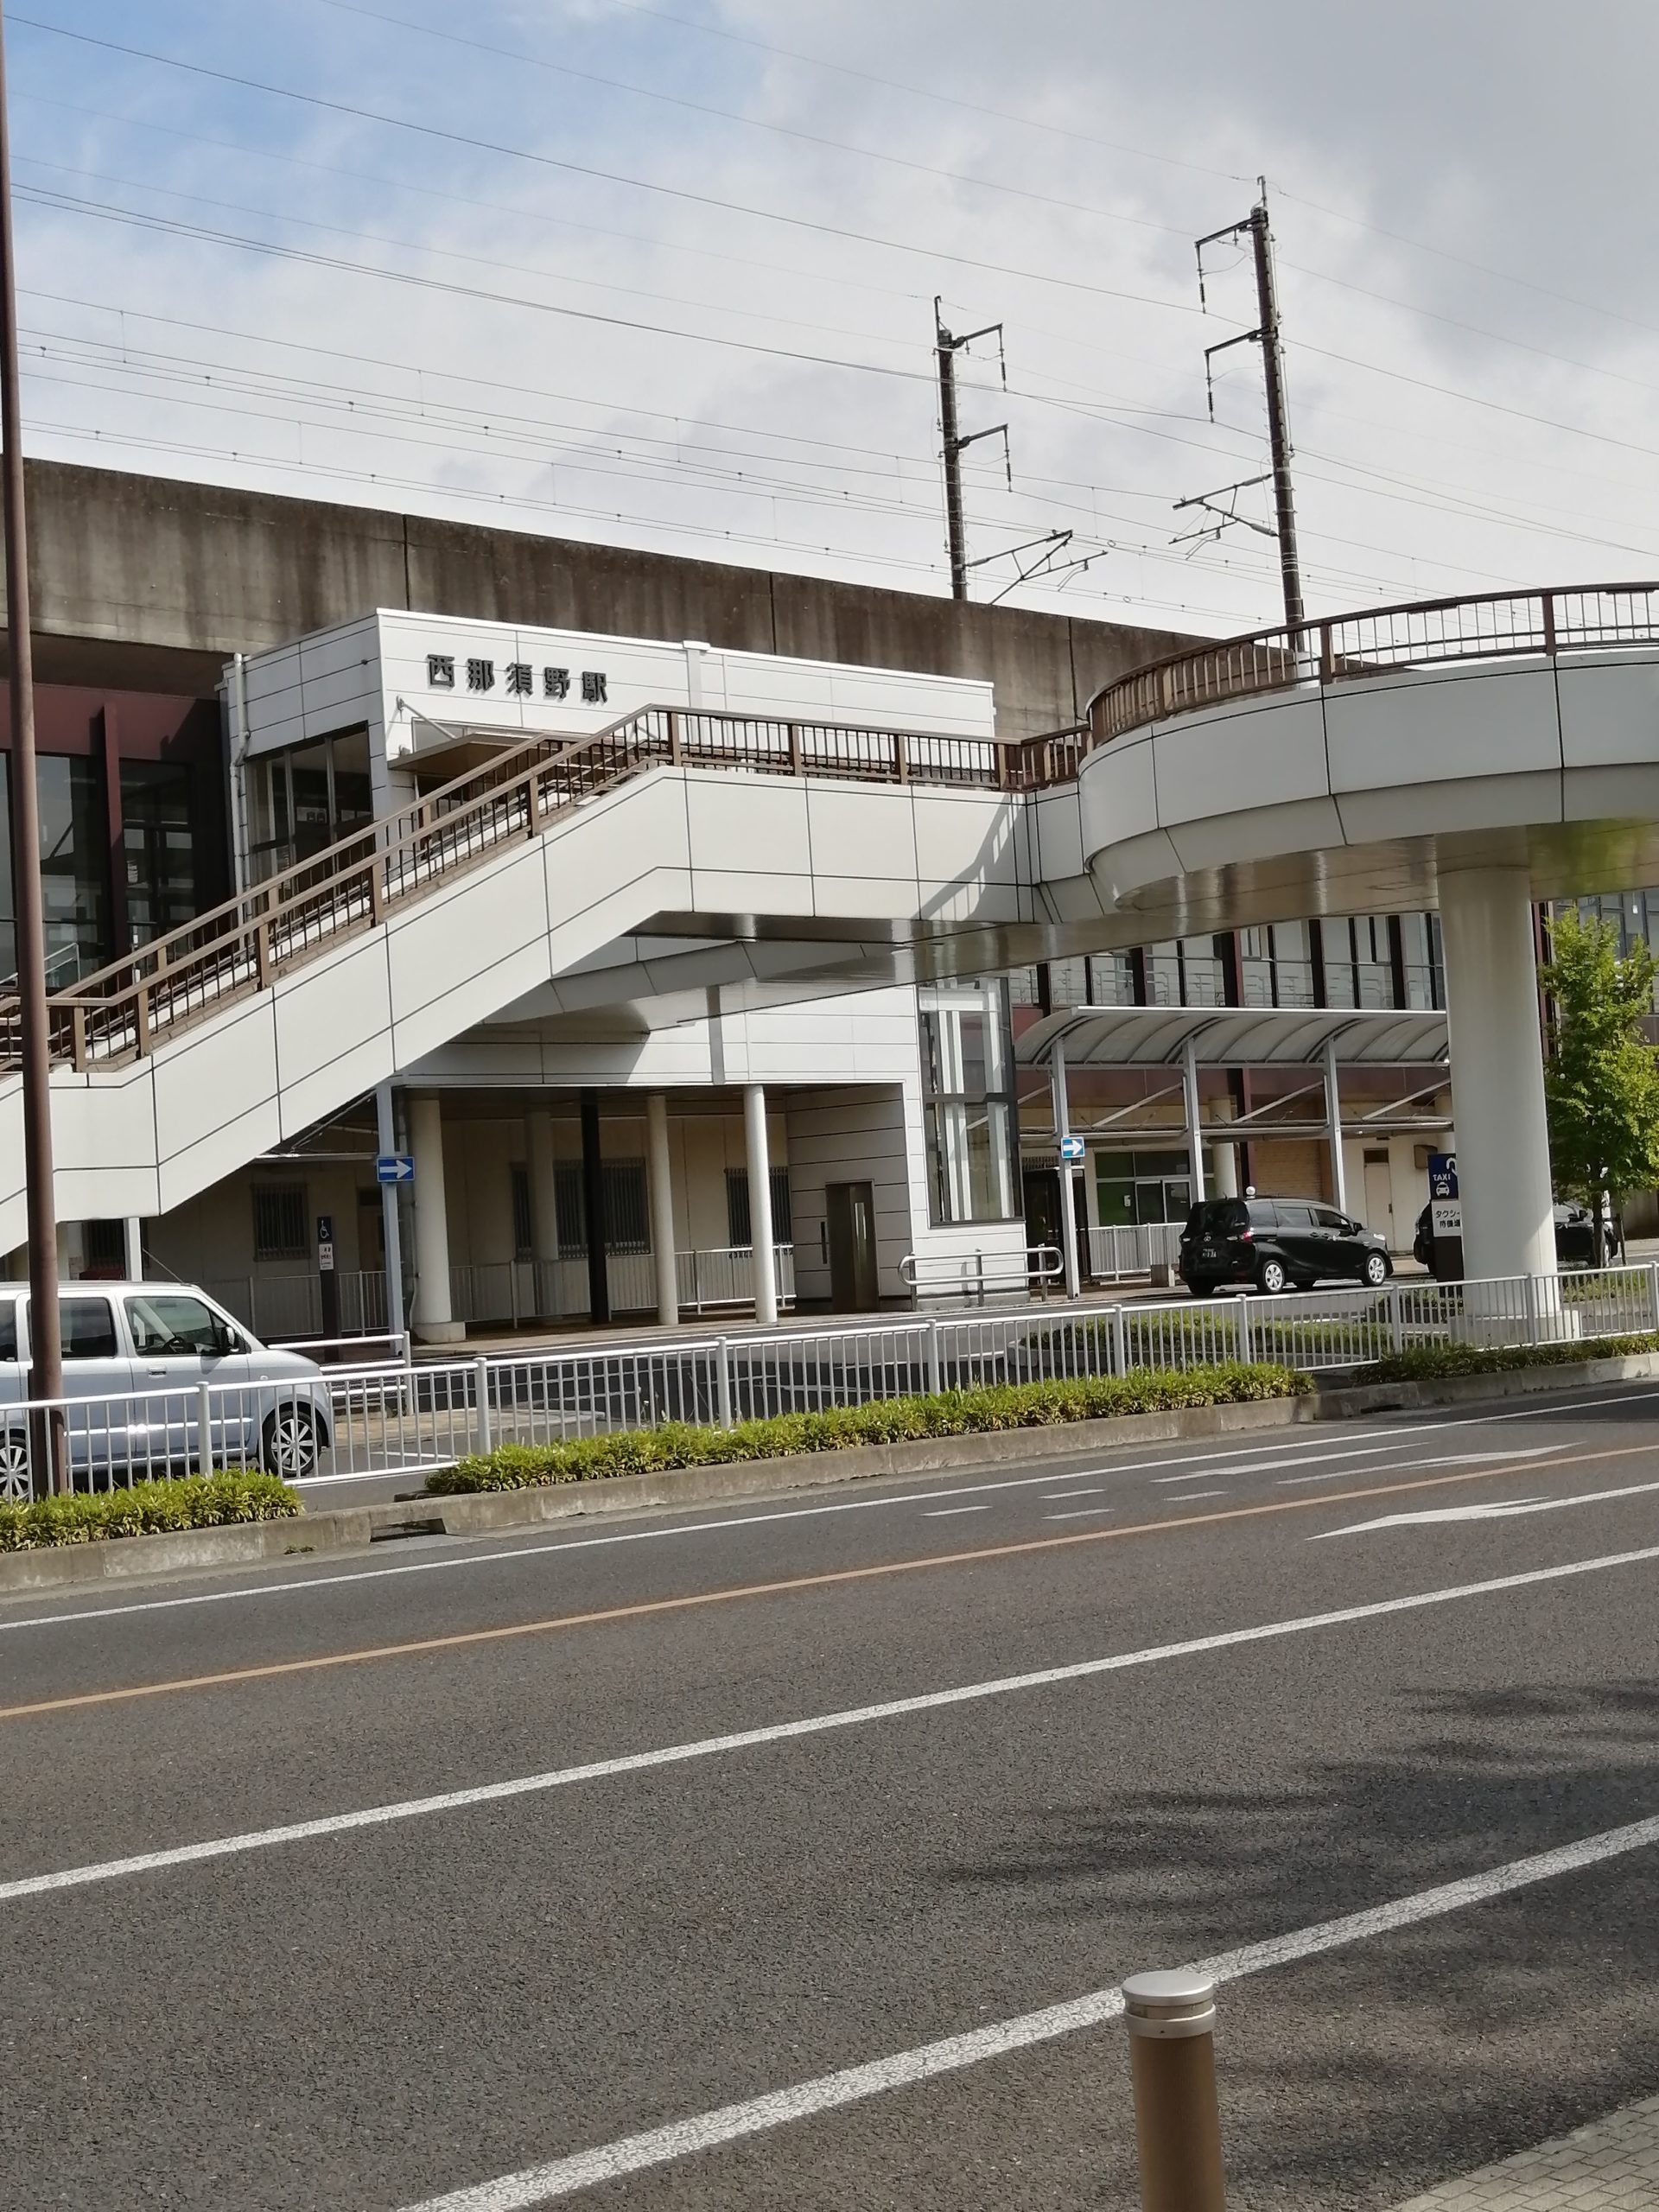 昔は那須駅だったjr西那須野駅さんは明治24年に名前変更 那須観光から日光 宇都宮観光など